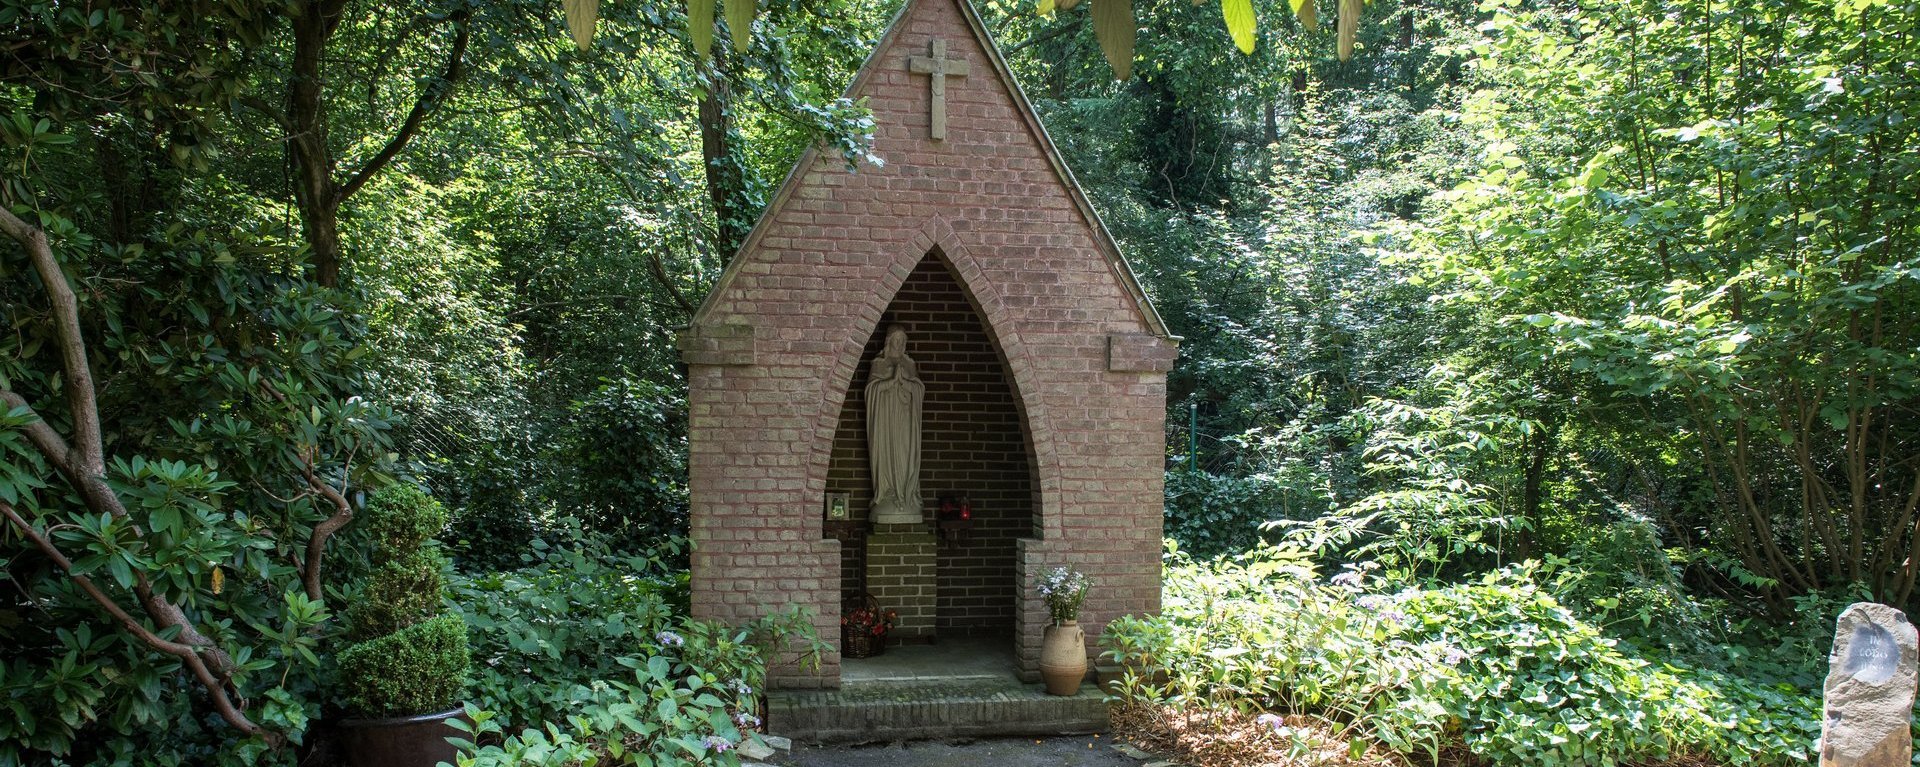 Madonnenstatue in einer kleinen Kapelle in einem Park umringt von vielen Pflanzen und Bäumen